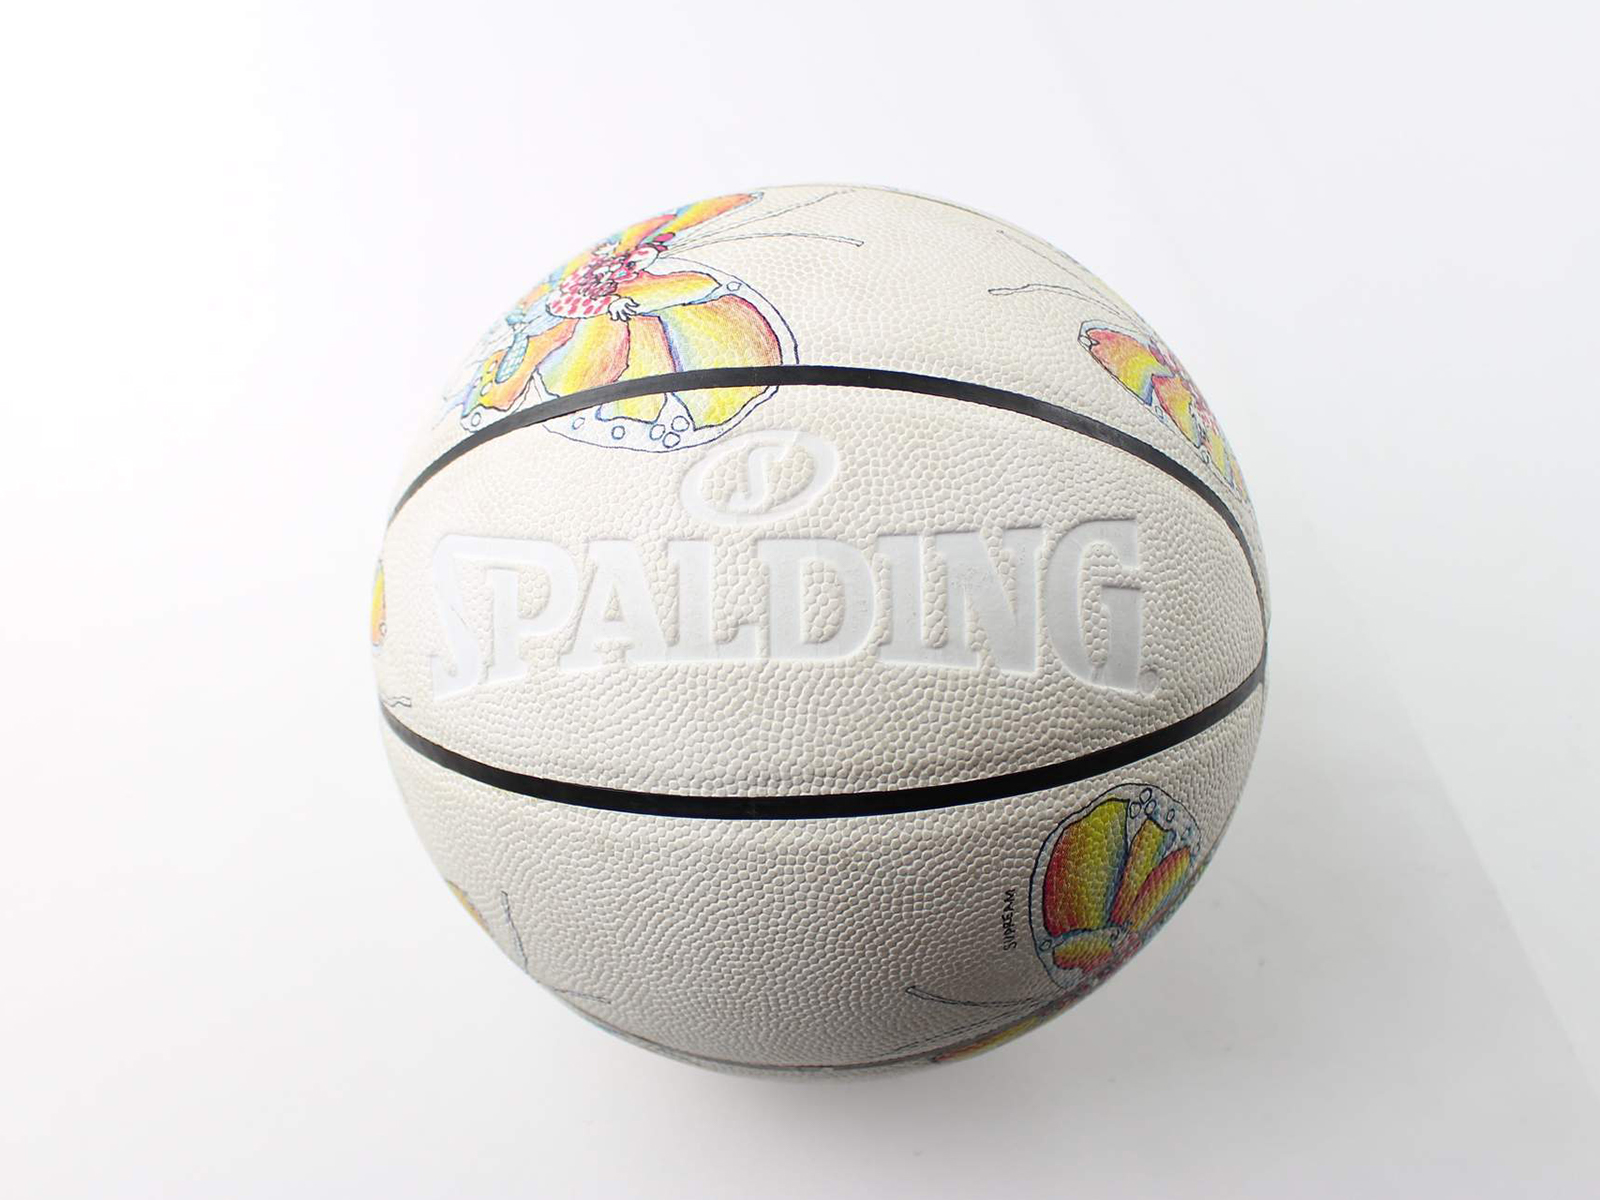 Plus beau ballon Spalding de l'histoire